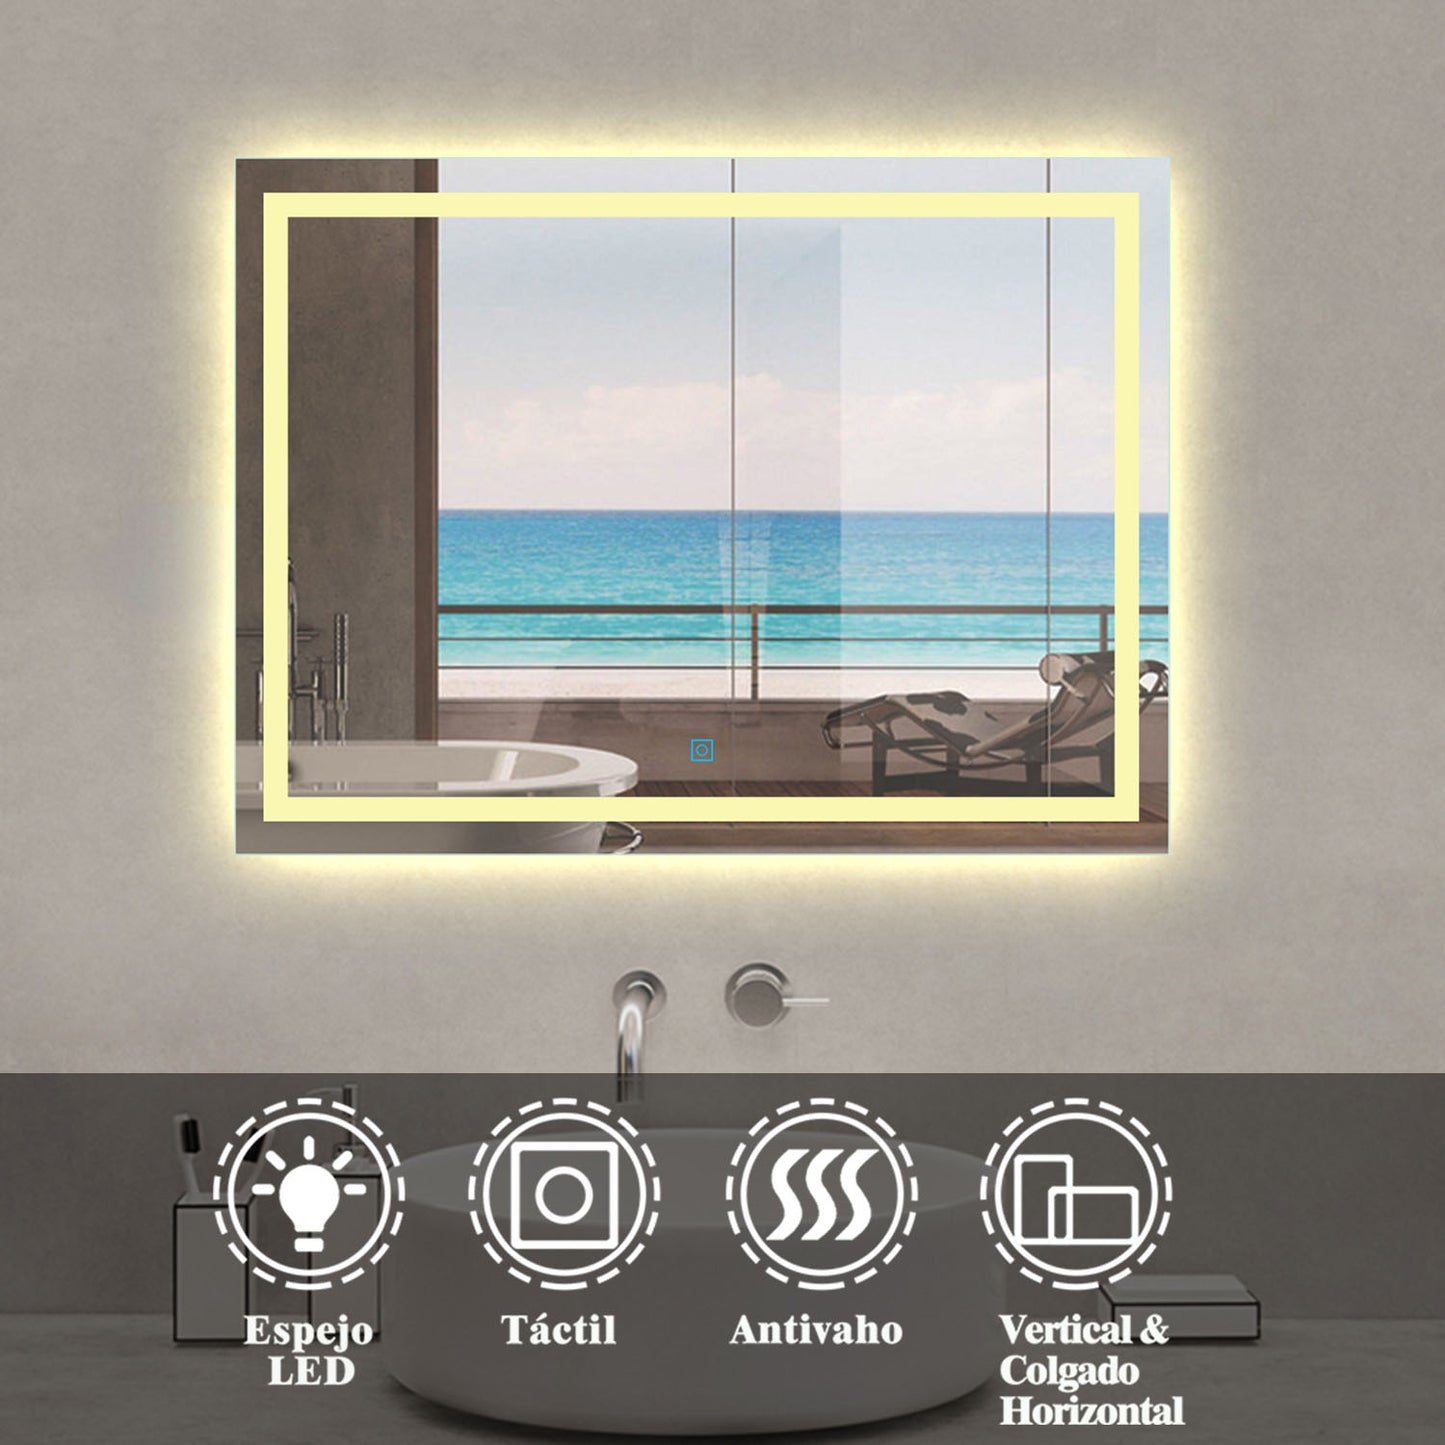 Espejo de Baño LED Luz Cálida 3800k(Brillo LED Envolvente) para Decorar Casa con Función Antivaho + Botón Táctil